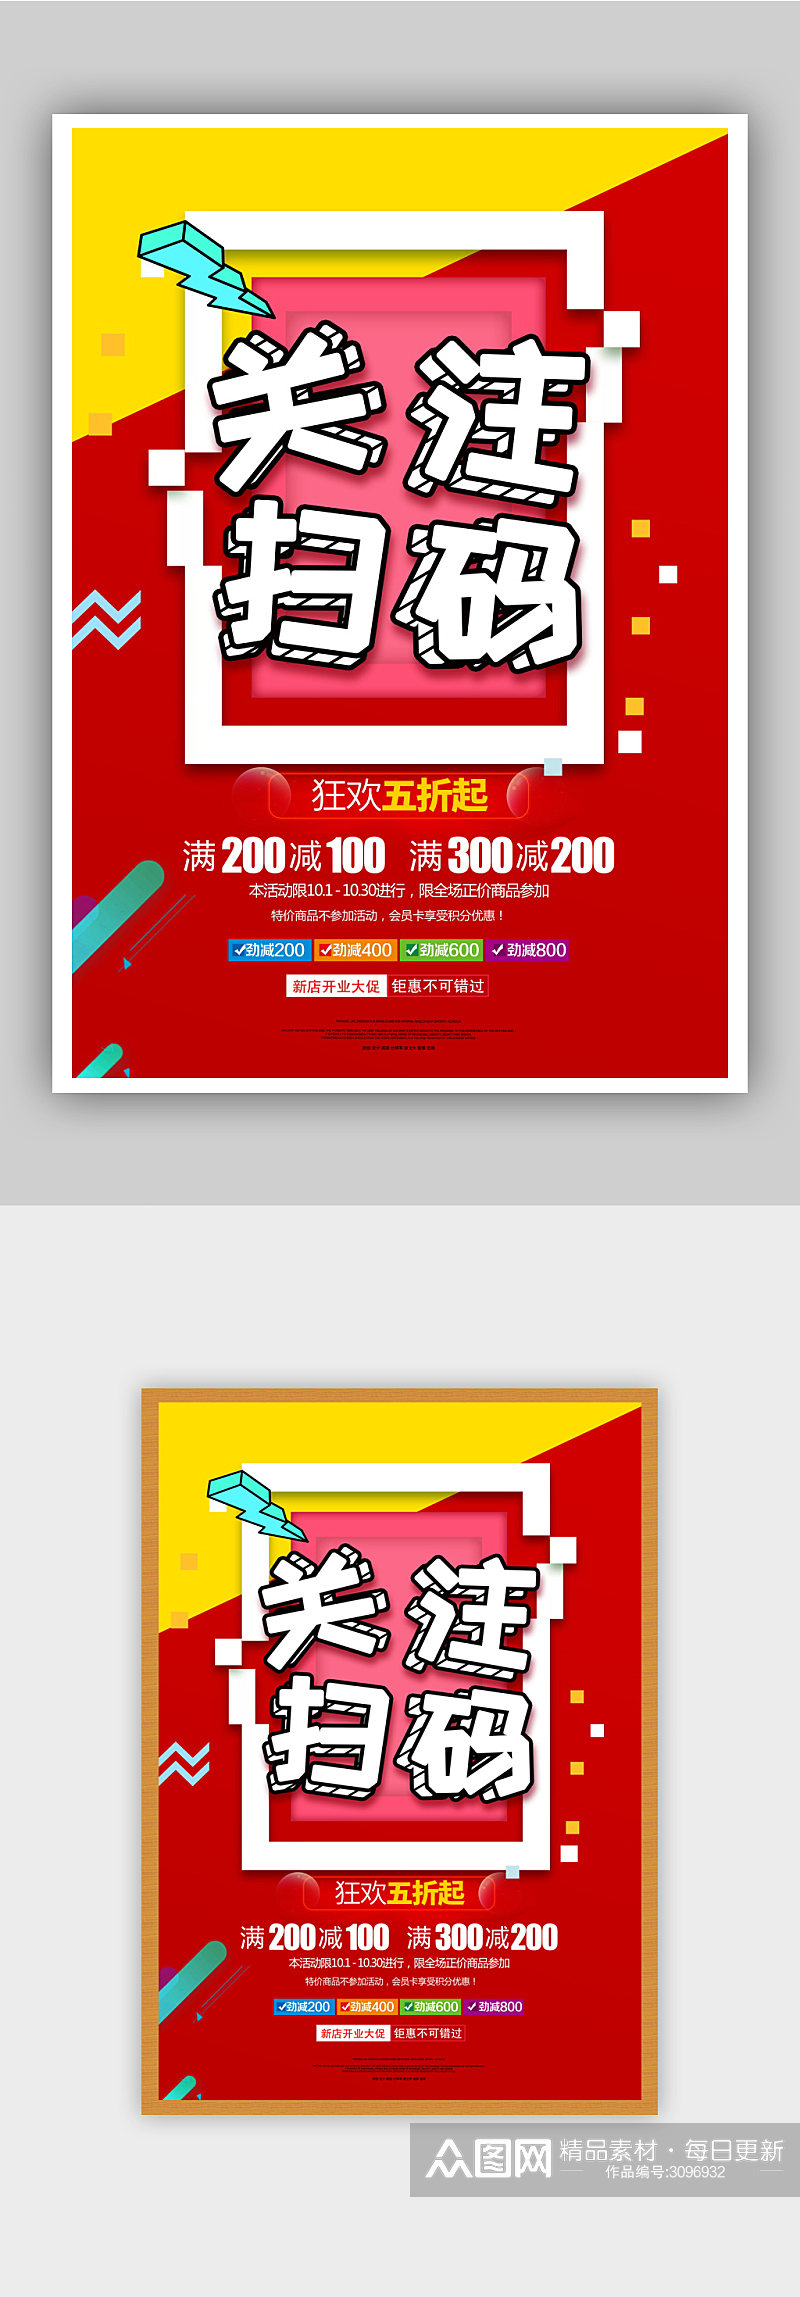 红色喜庆开业扫码促销活动海报素材